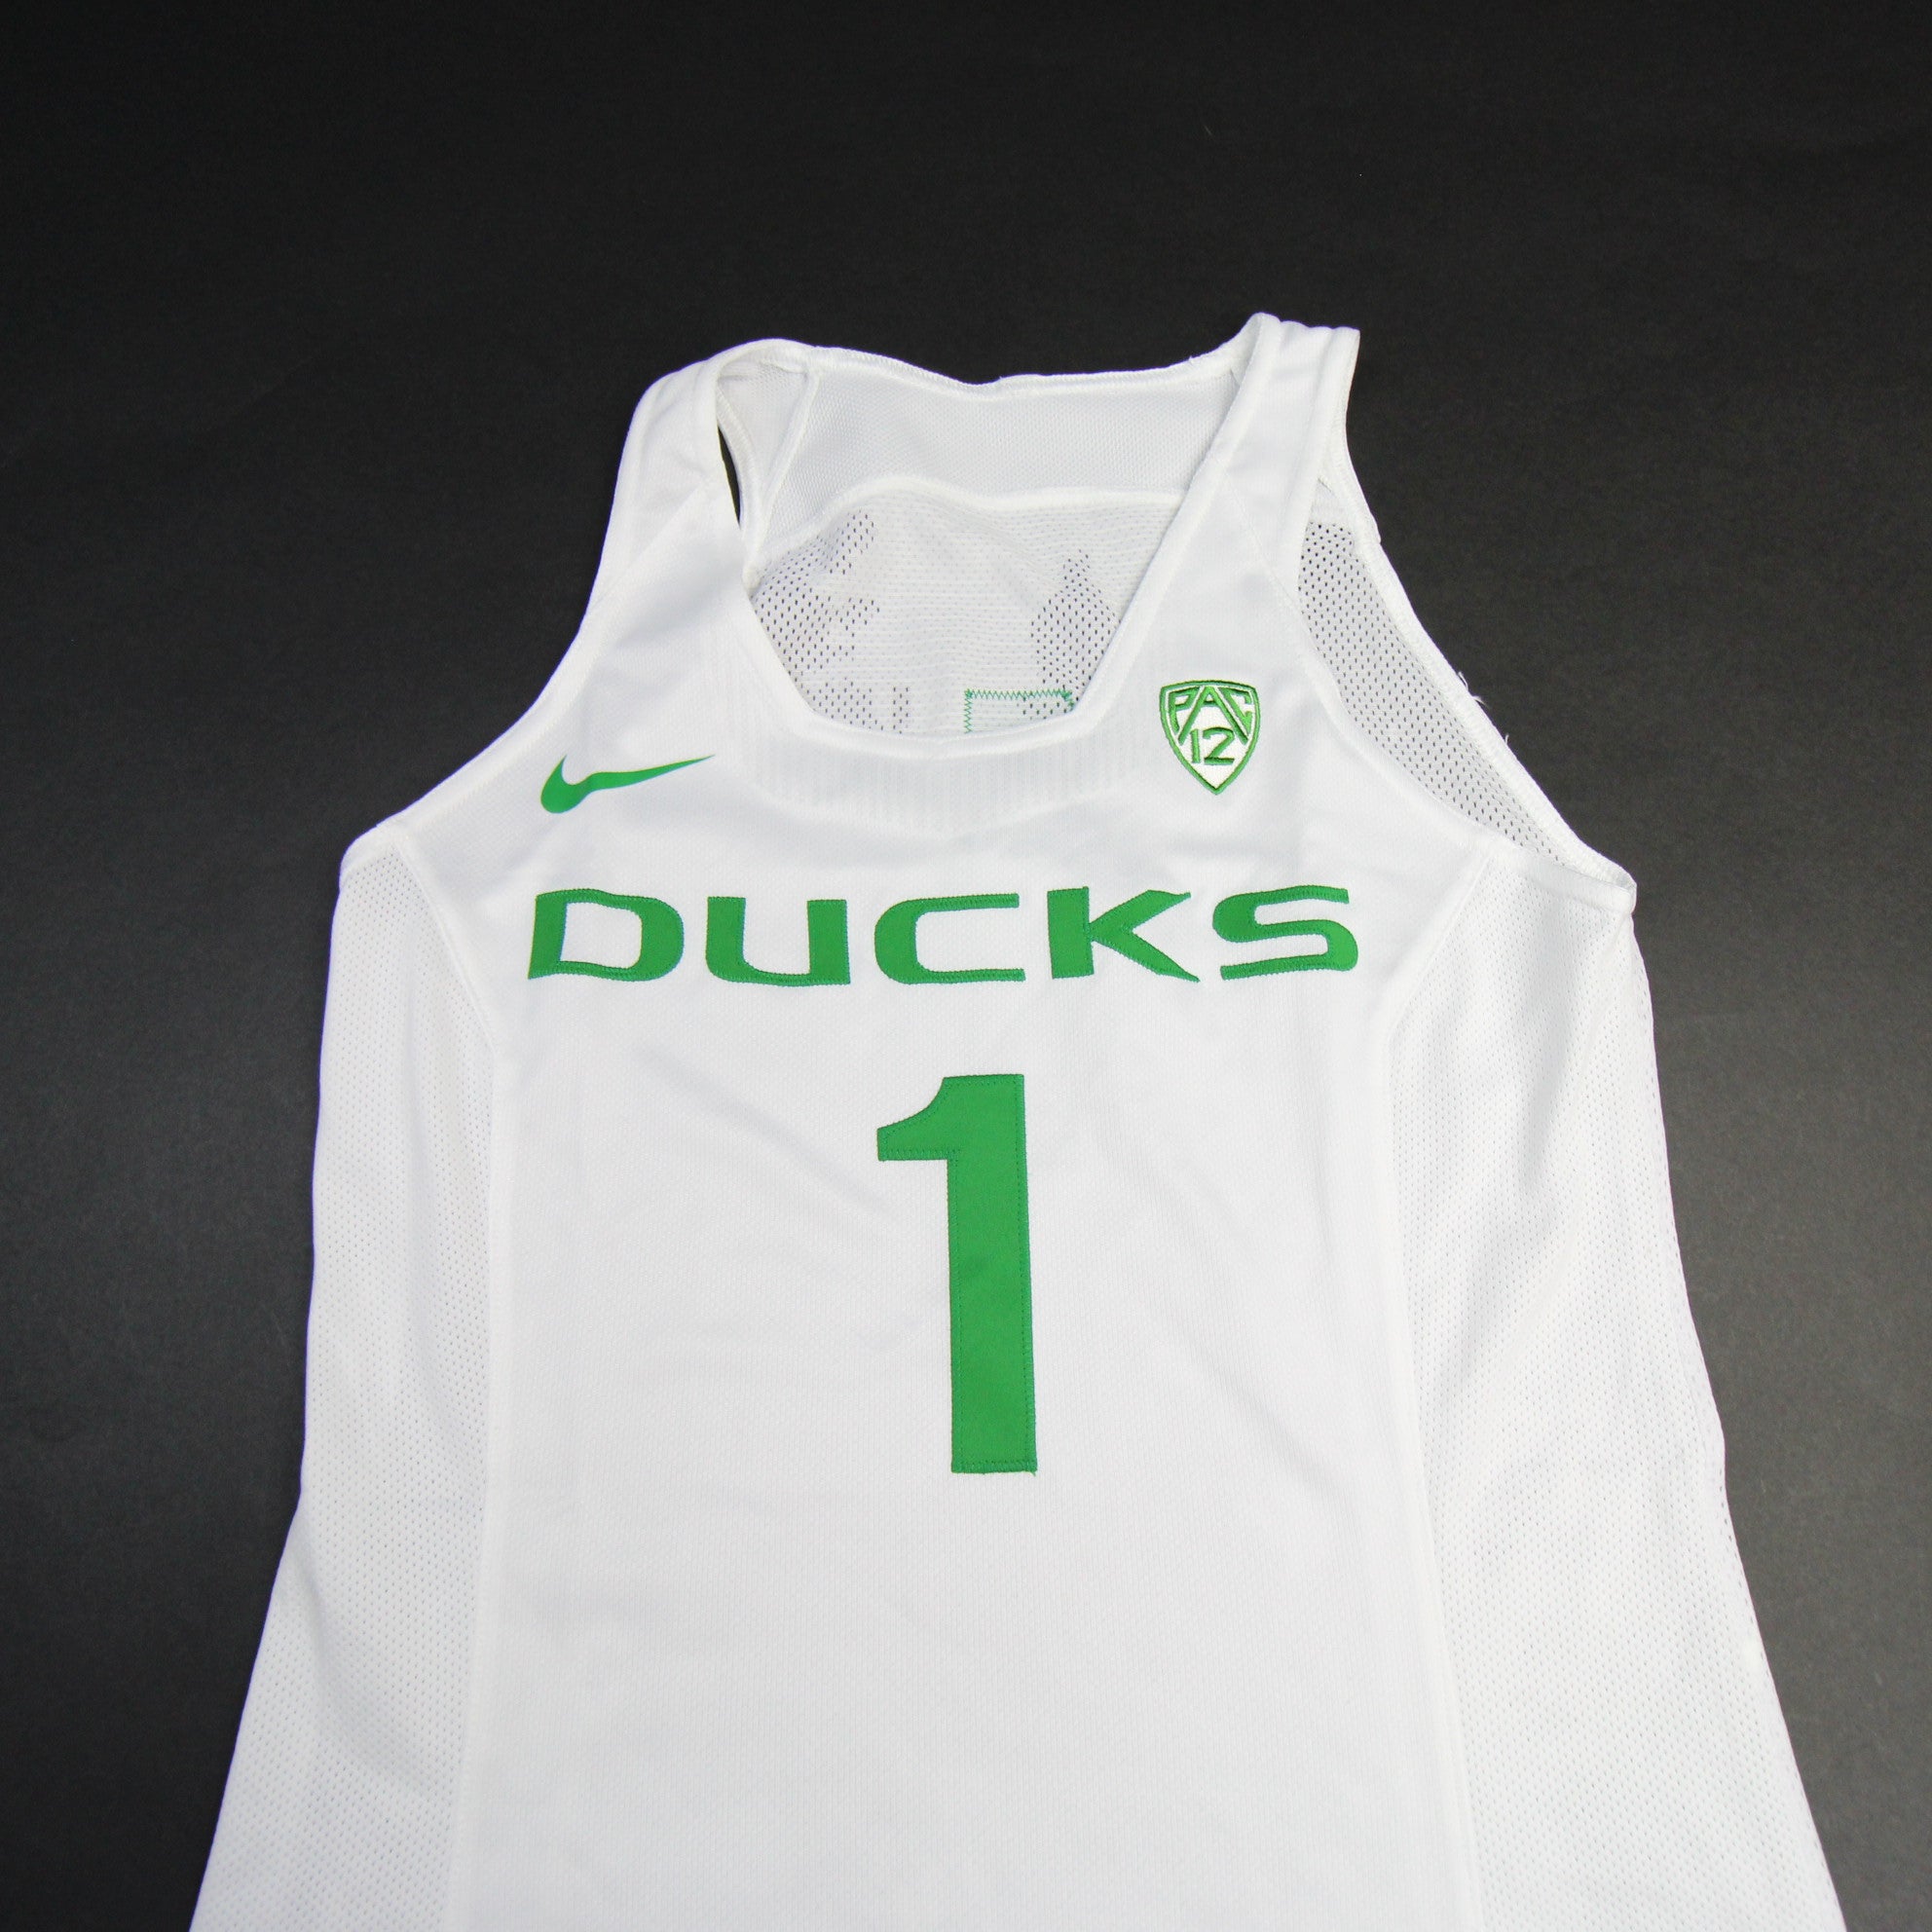 ducks basketball jersey